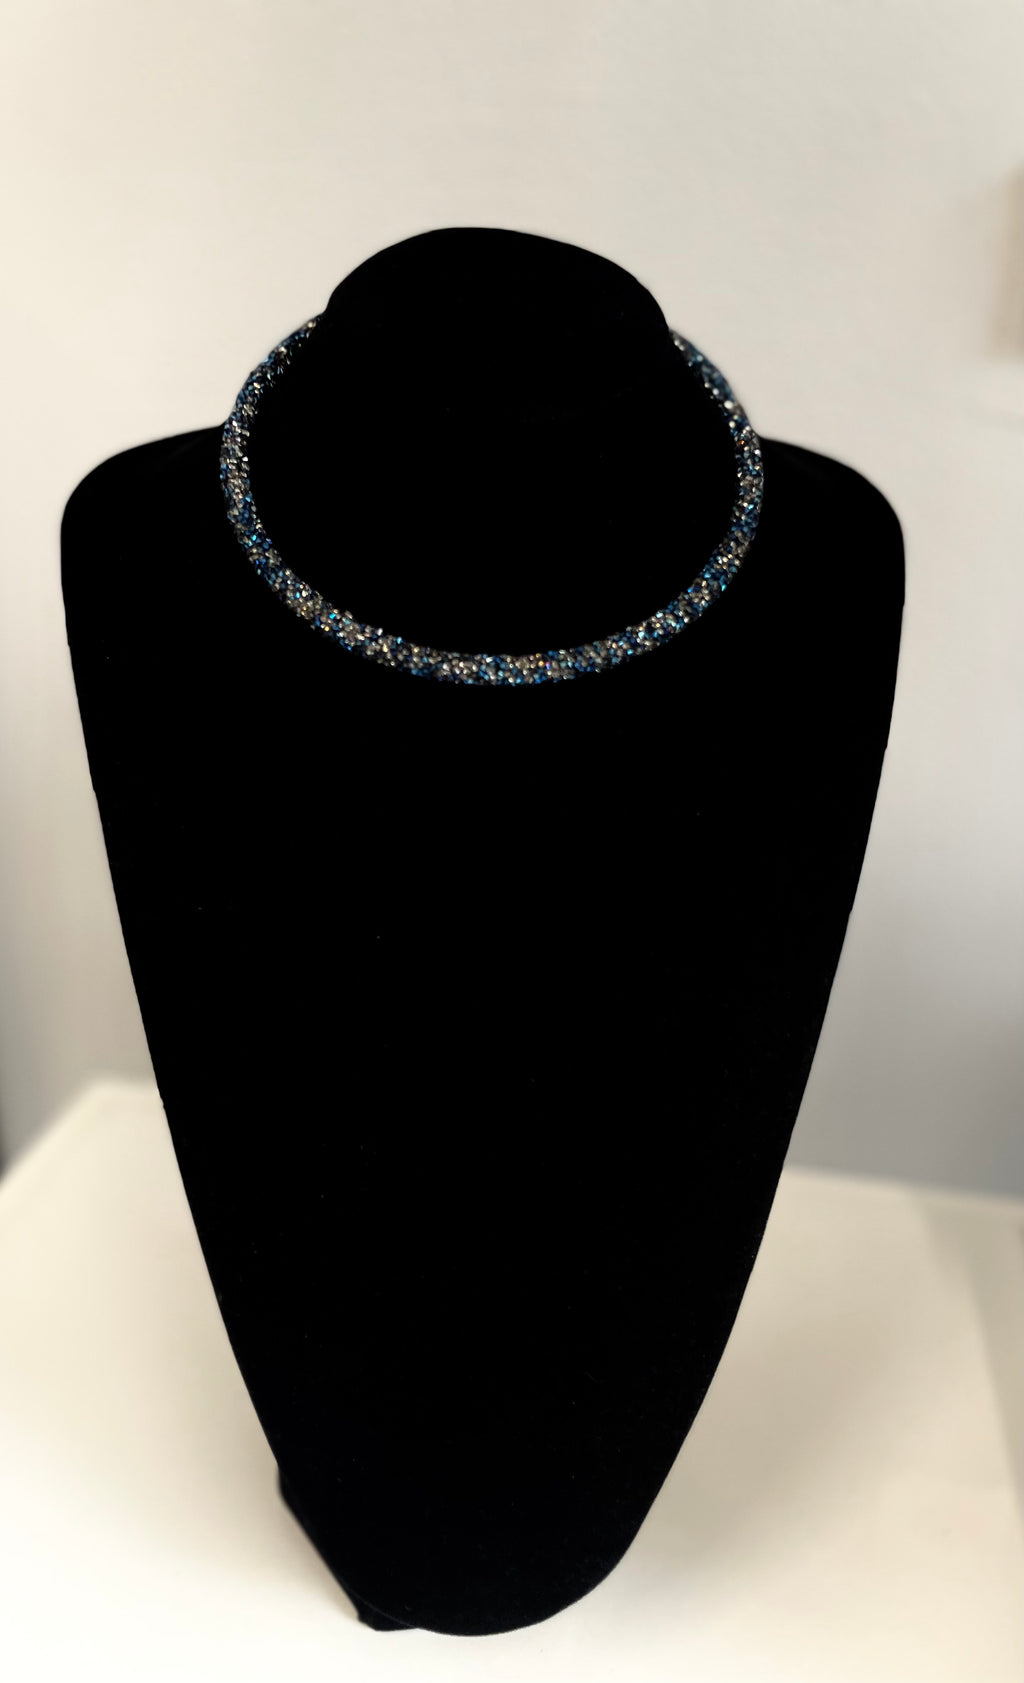 Voila - simple necklace